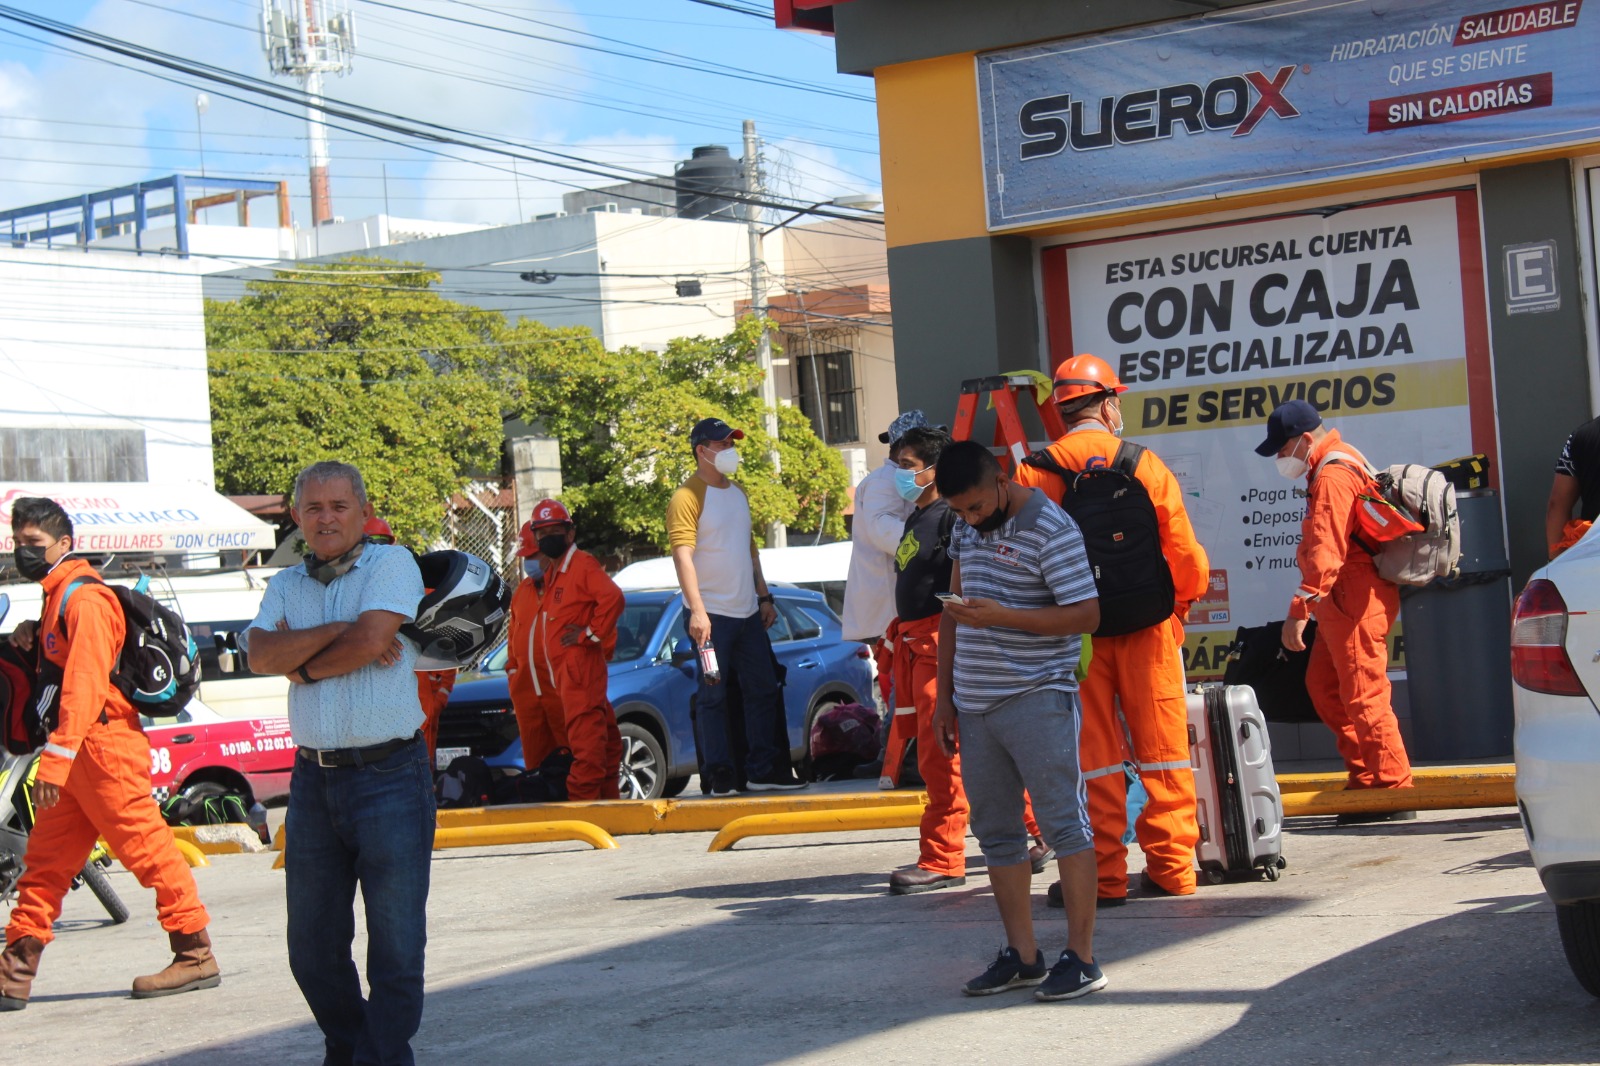 Petroempresas de Ciudad del Carmen se enriquecen mediante la explotación laboral